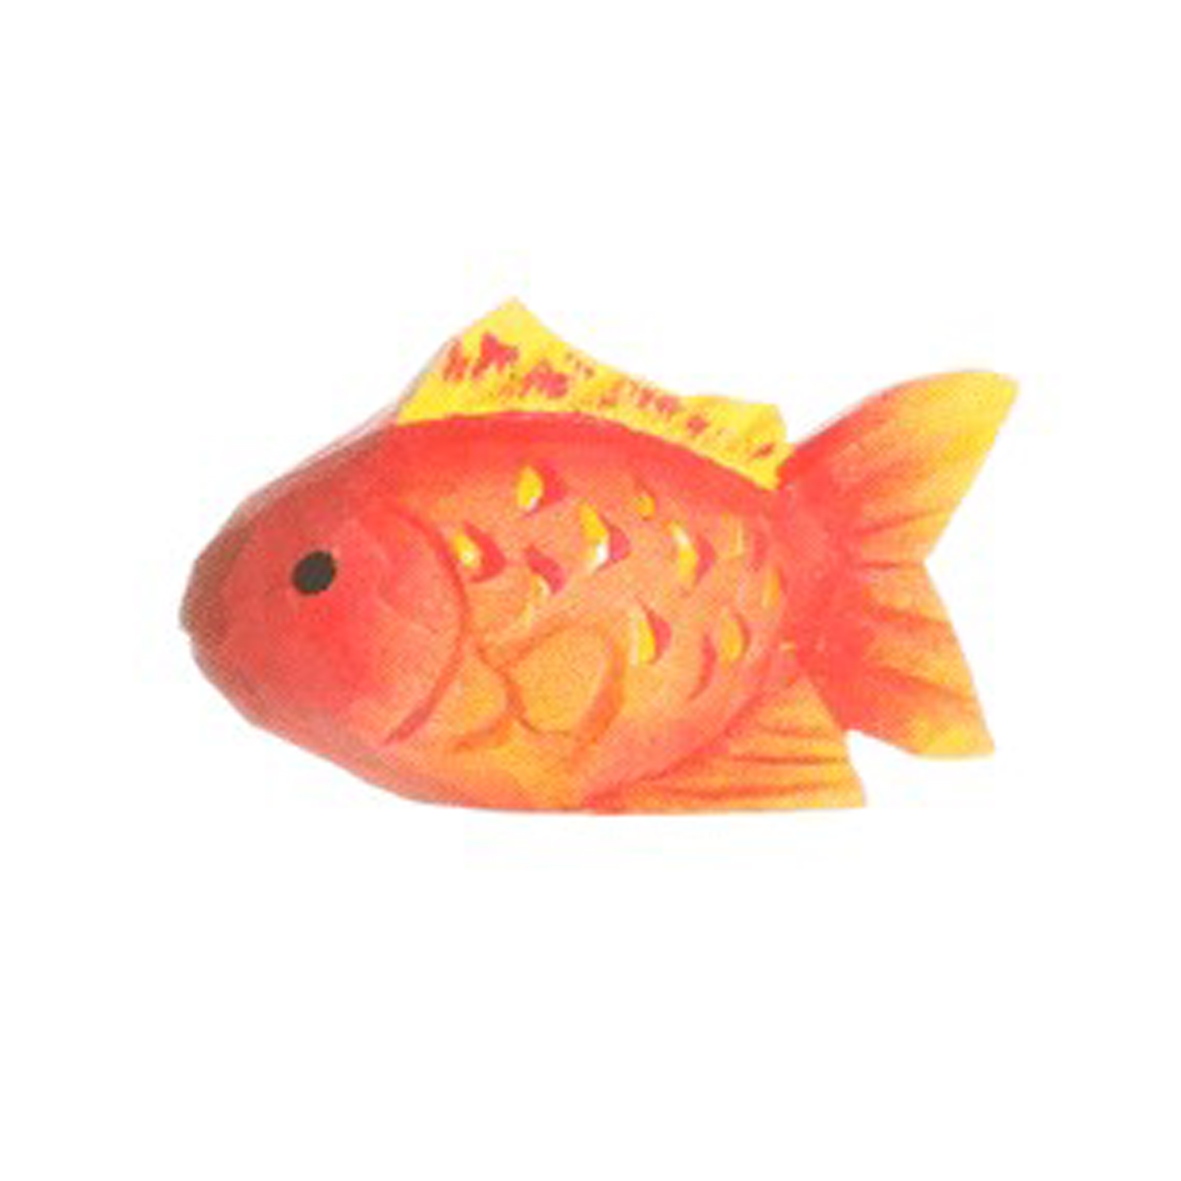 Corvus A040818 Wudimals Goldfisch